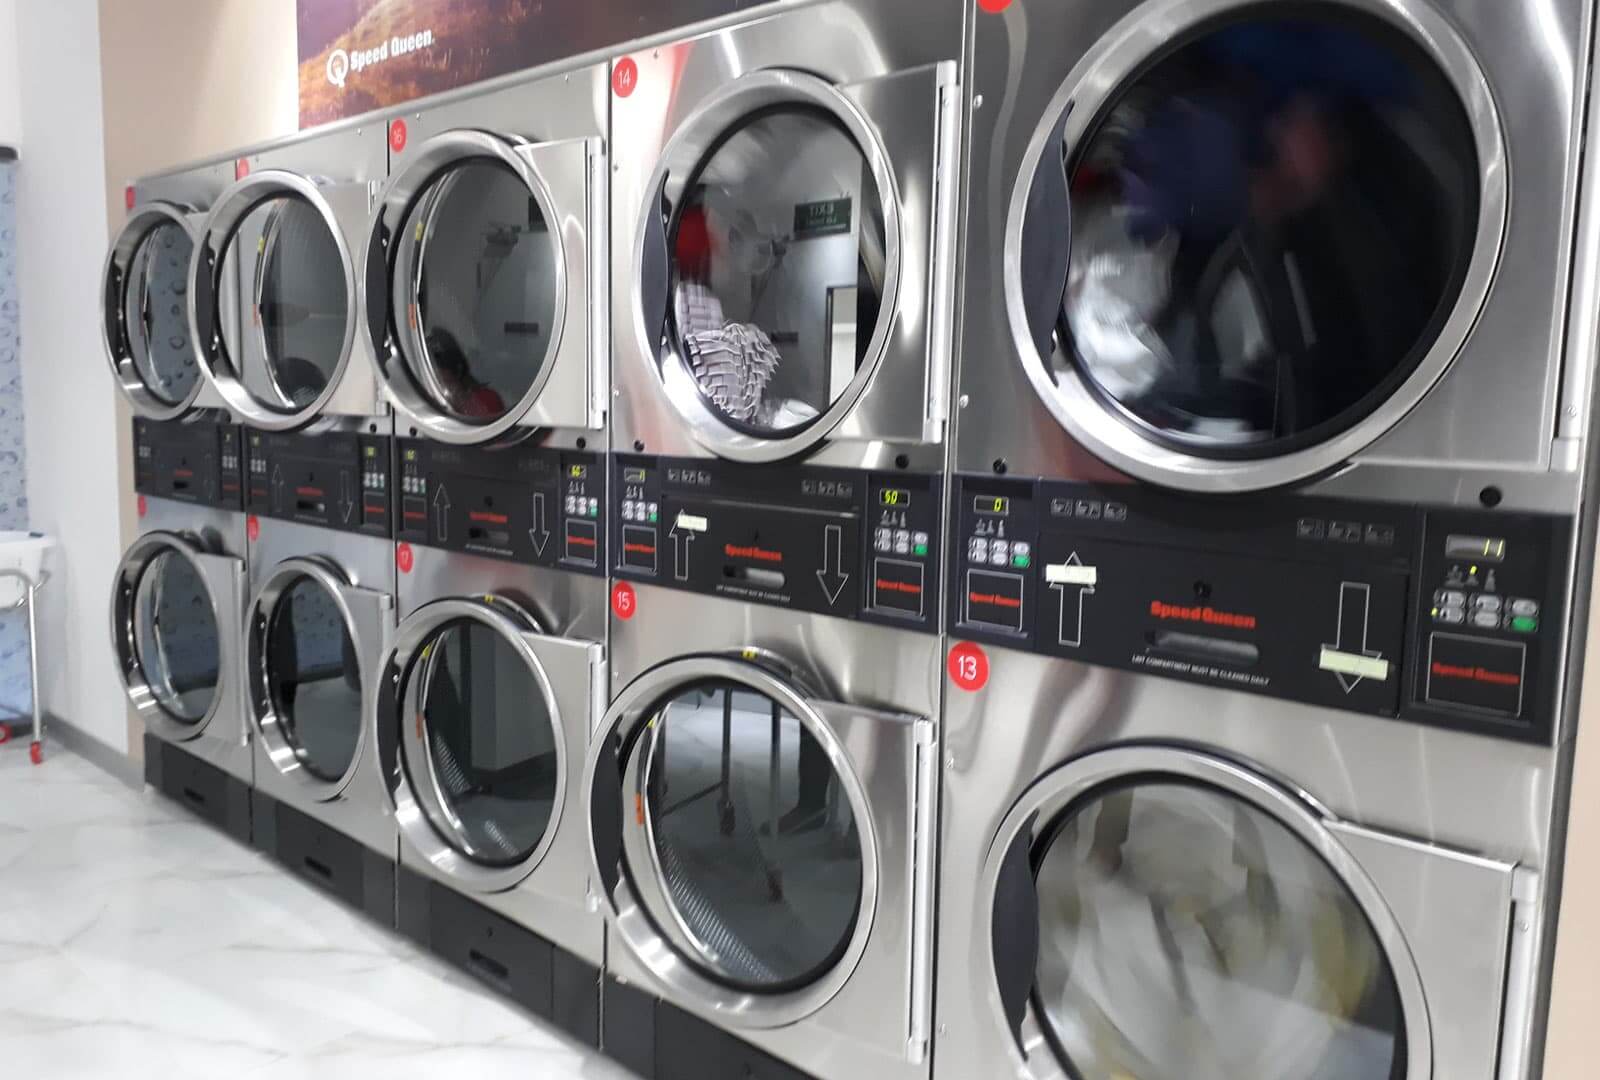 Dịch vụ giặt ủi gần nhất: Tiện ích hoàn hảo cho cuộc sống hiện đại